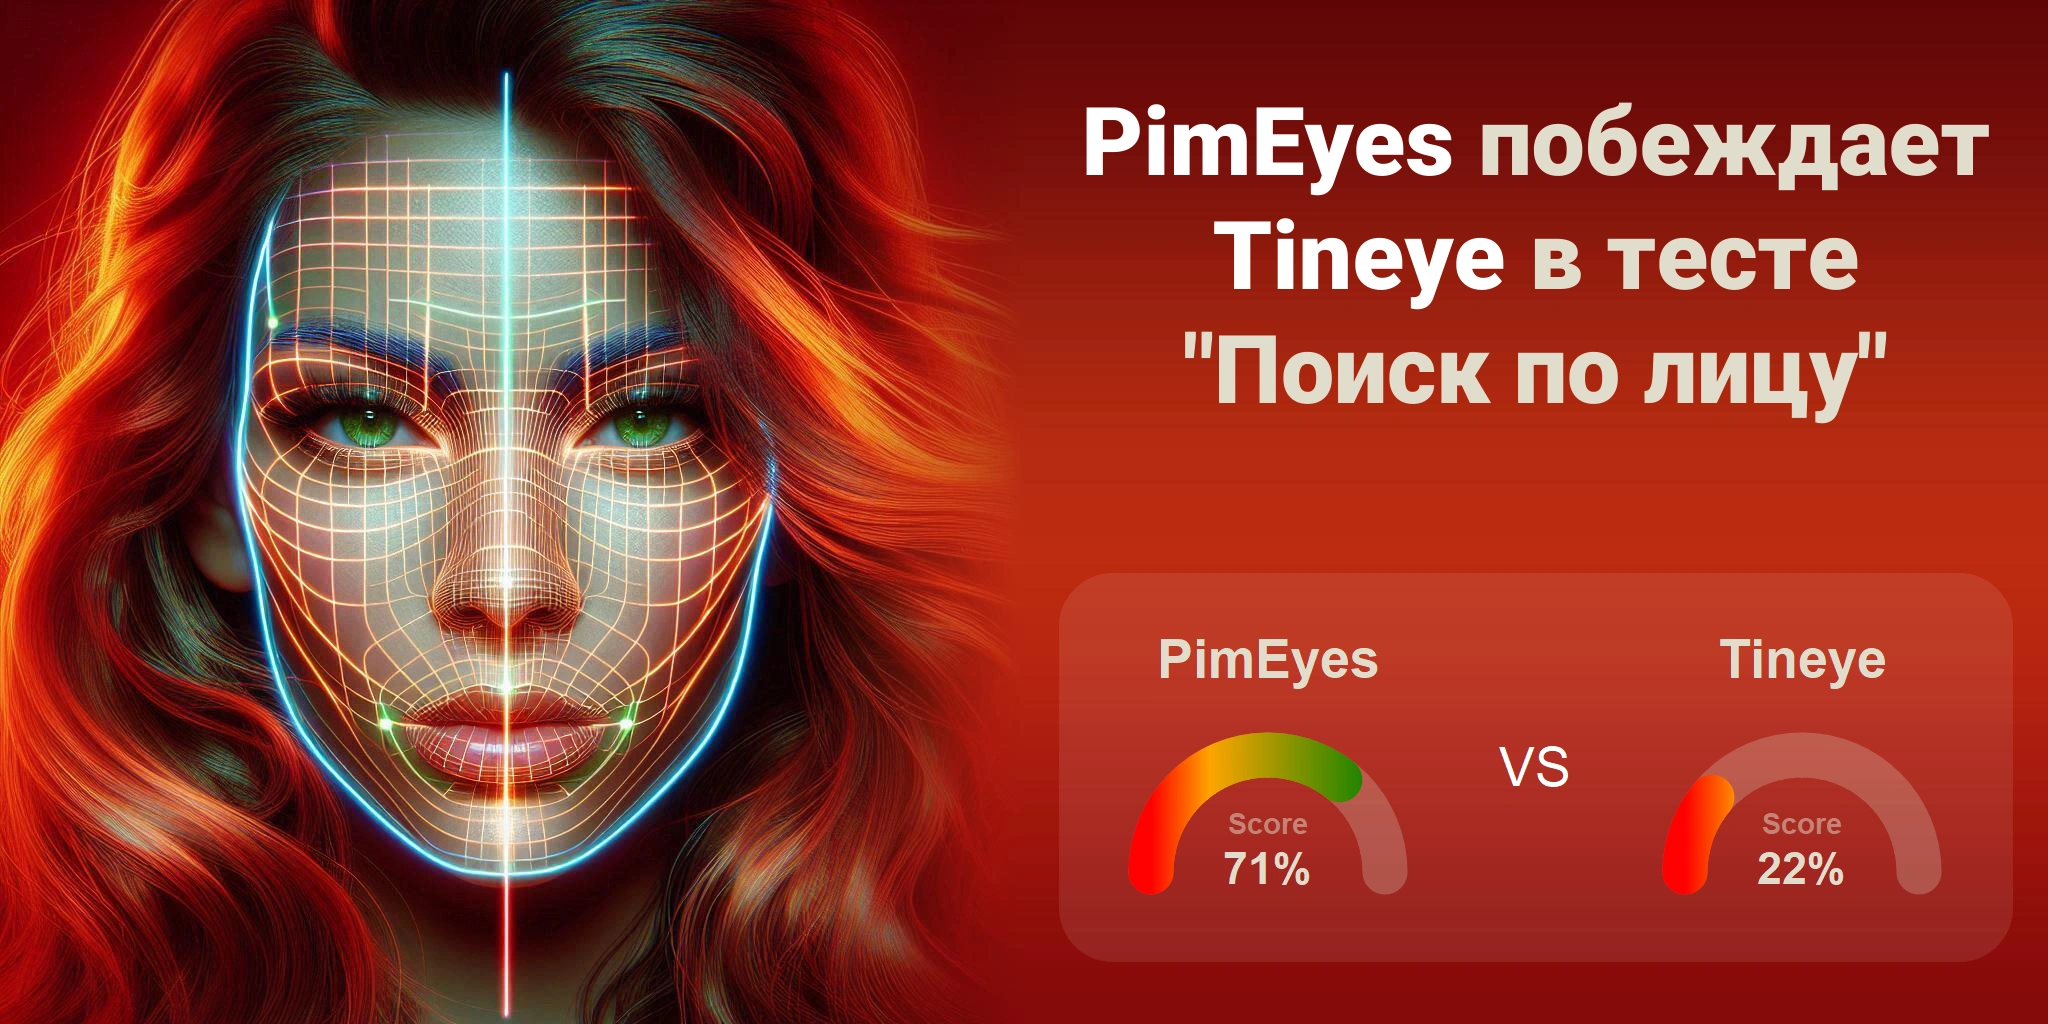 Что лучше для поиска по лицам: <br>PimEyes или Tineye?